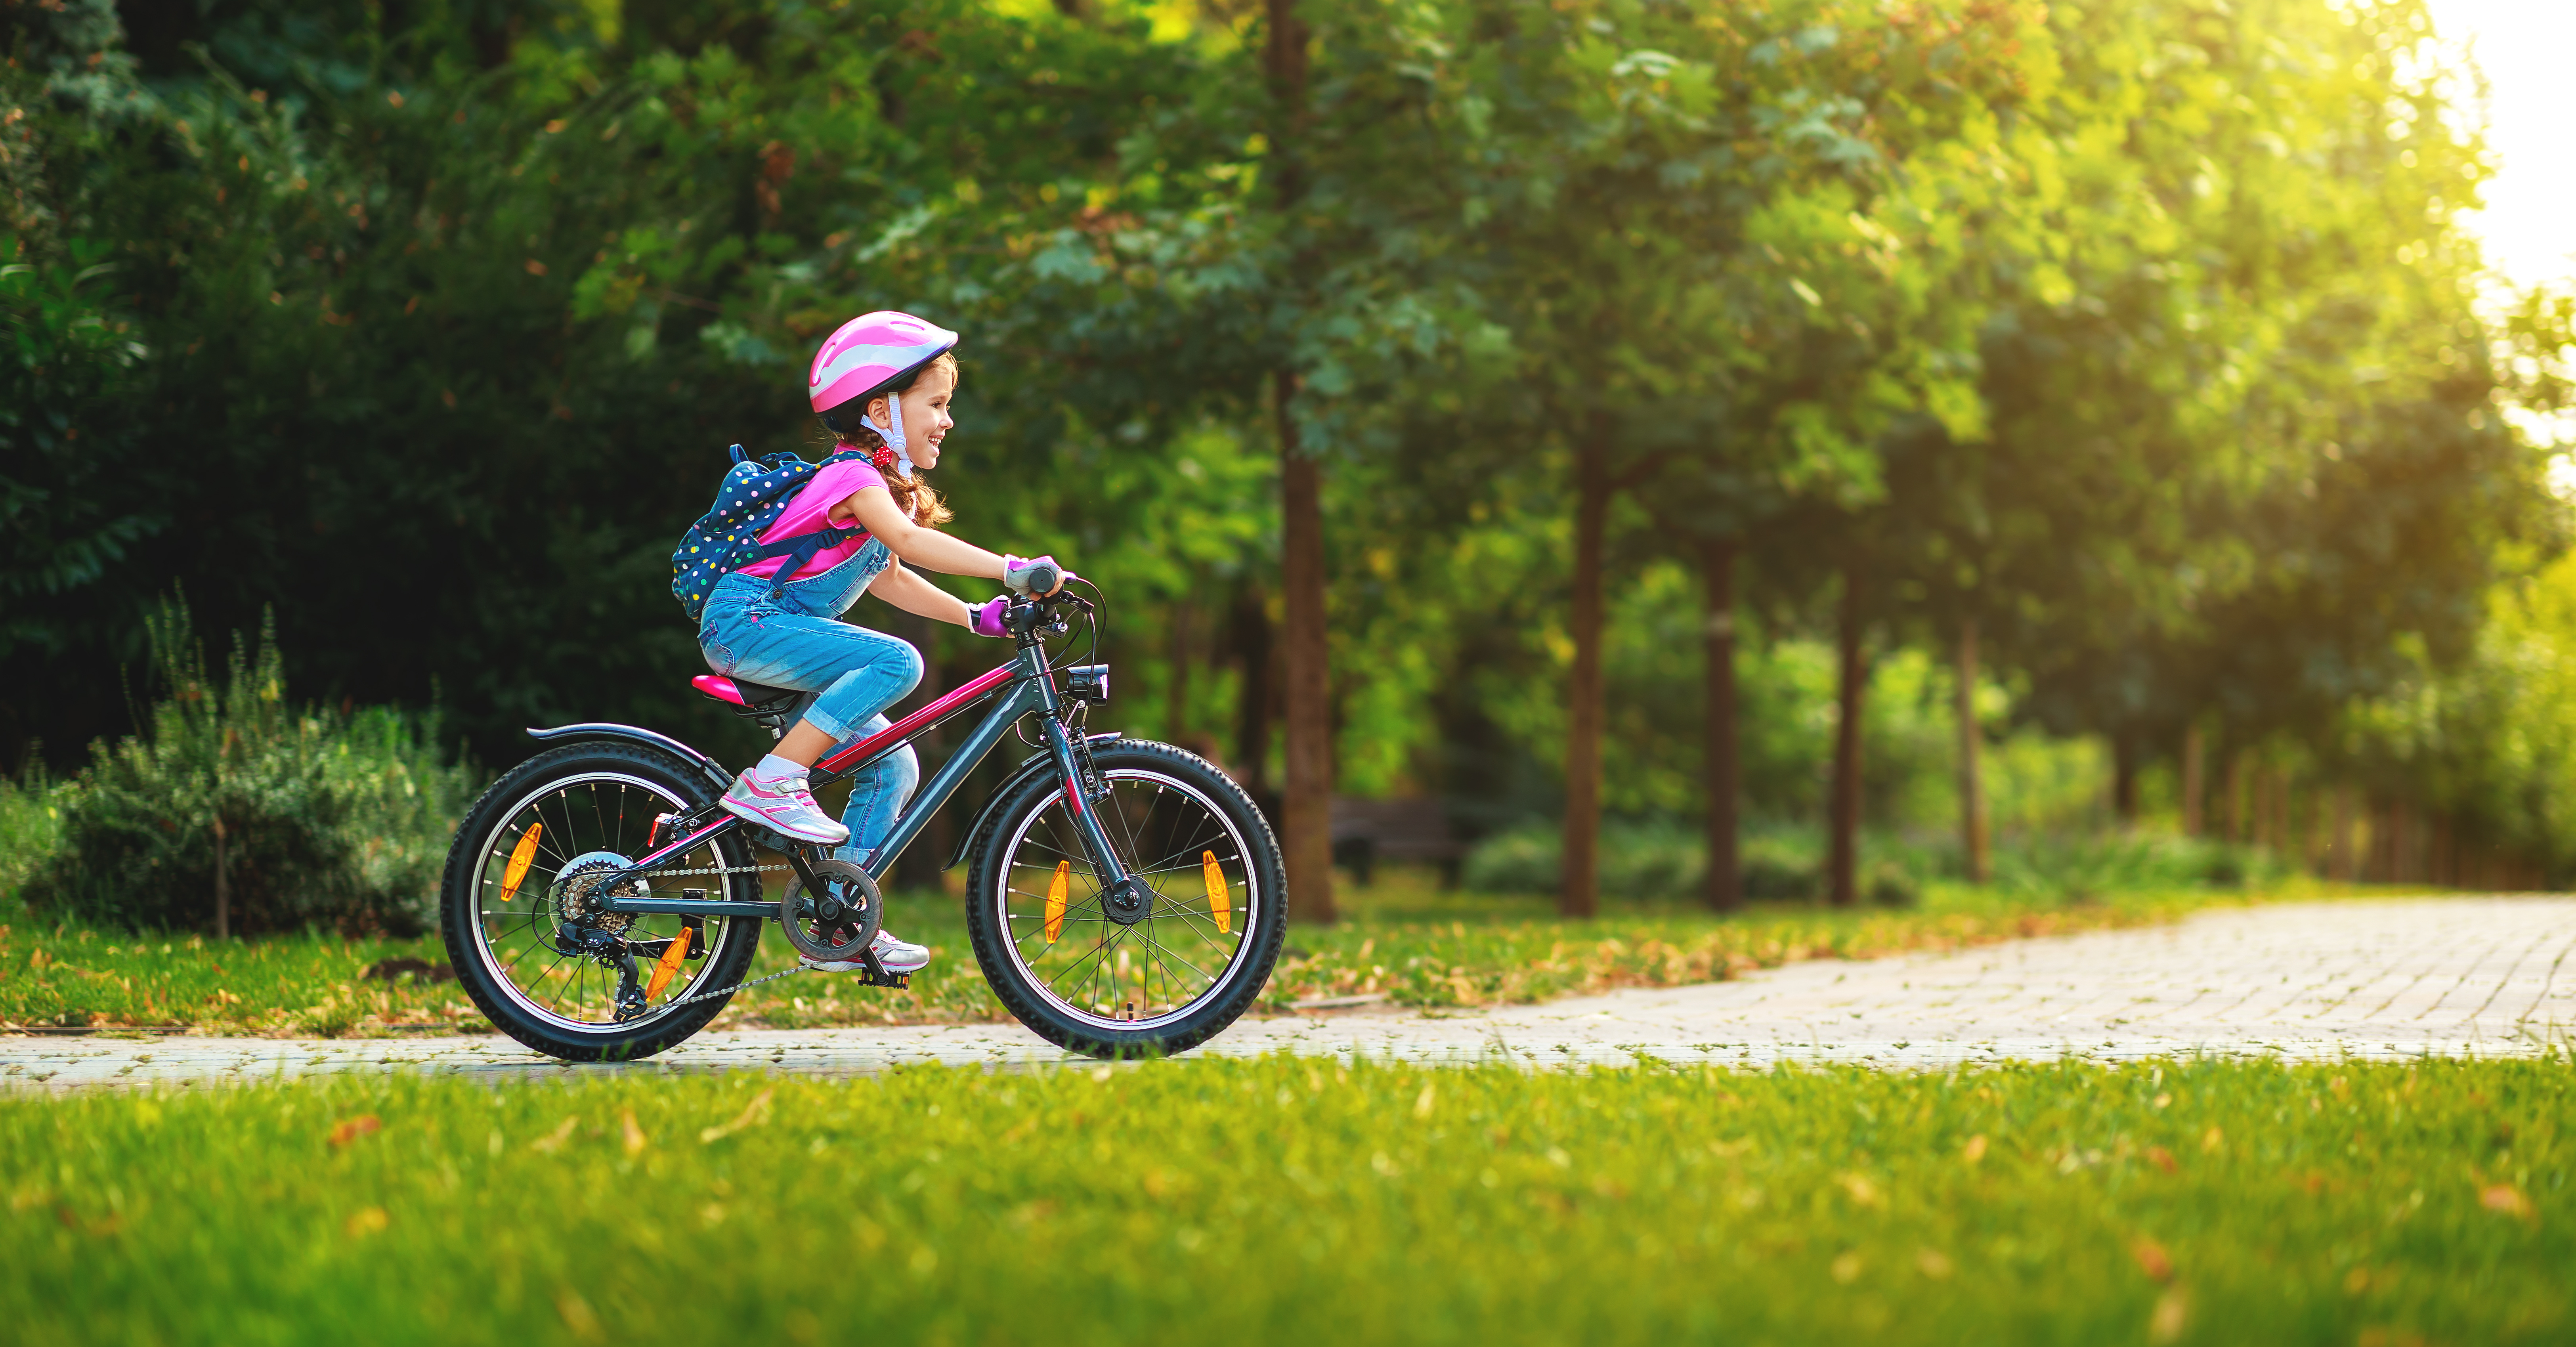 Choisir vélo enfant : quels critères prendre en compte ?